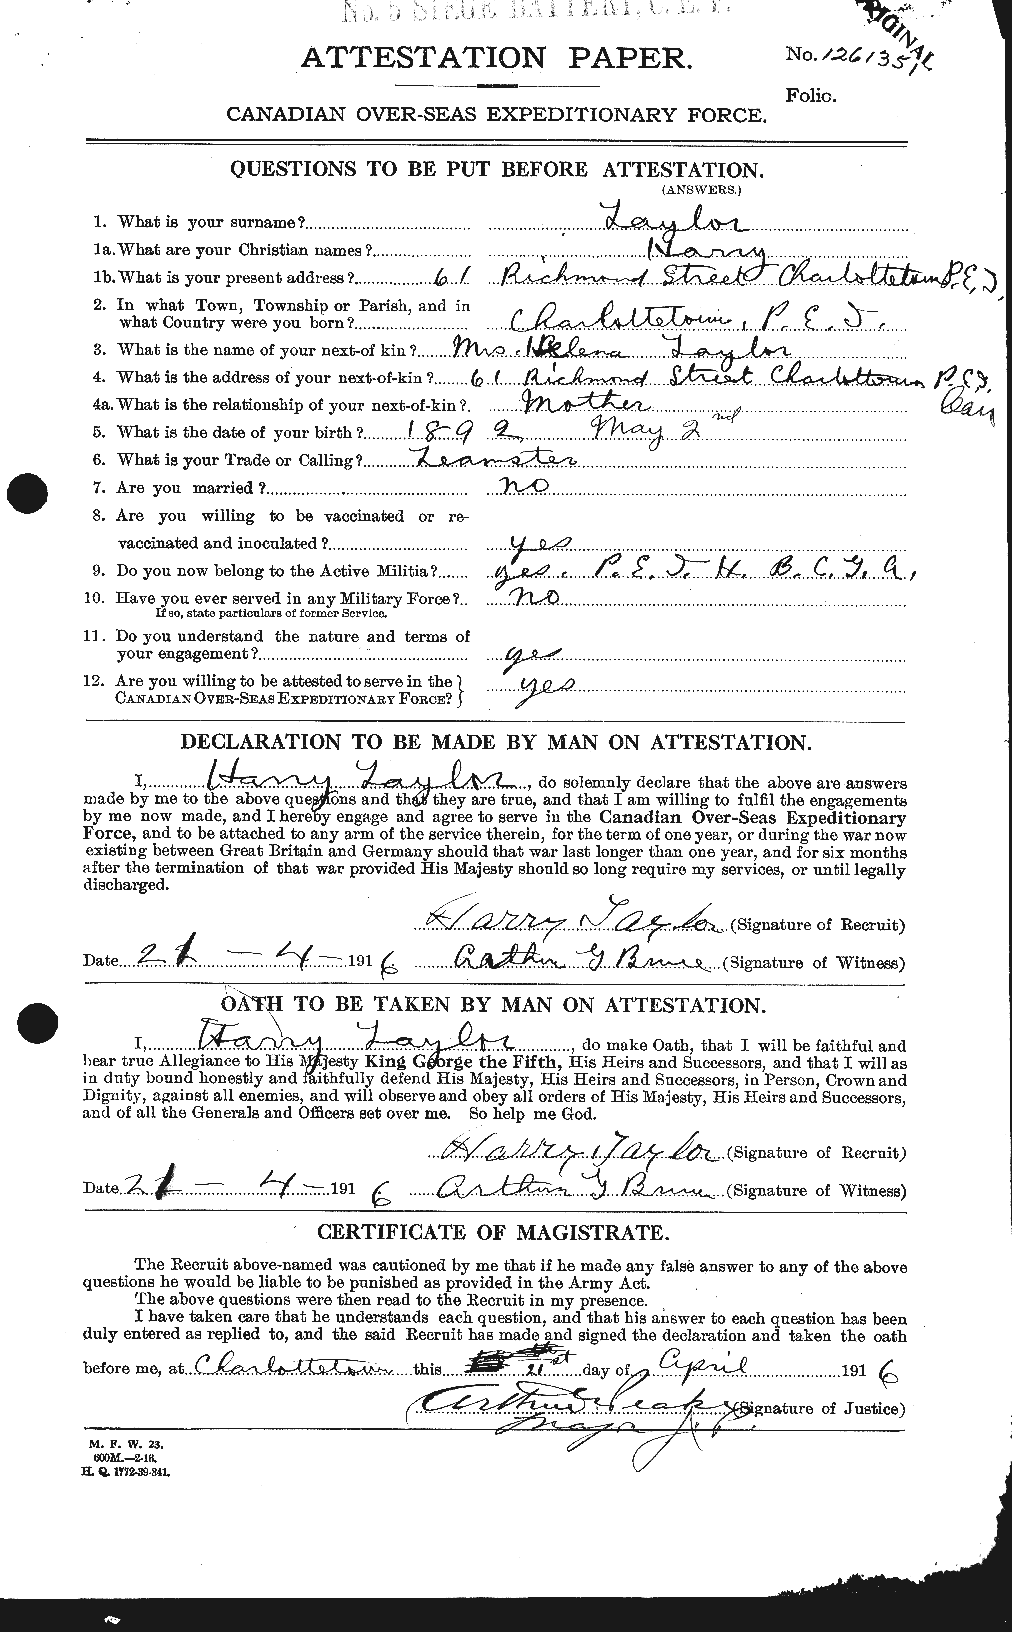 Dossiers du Personnel de la Première Guerre mondiale - CEC 626466a